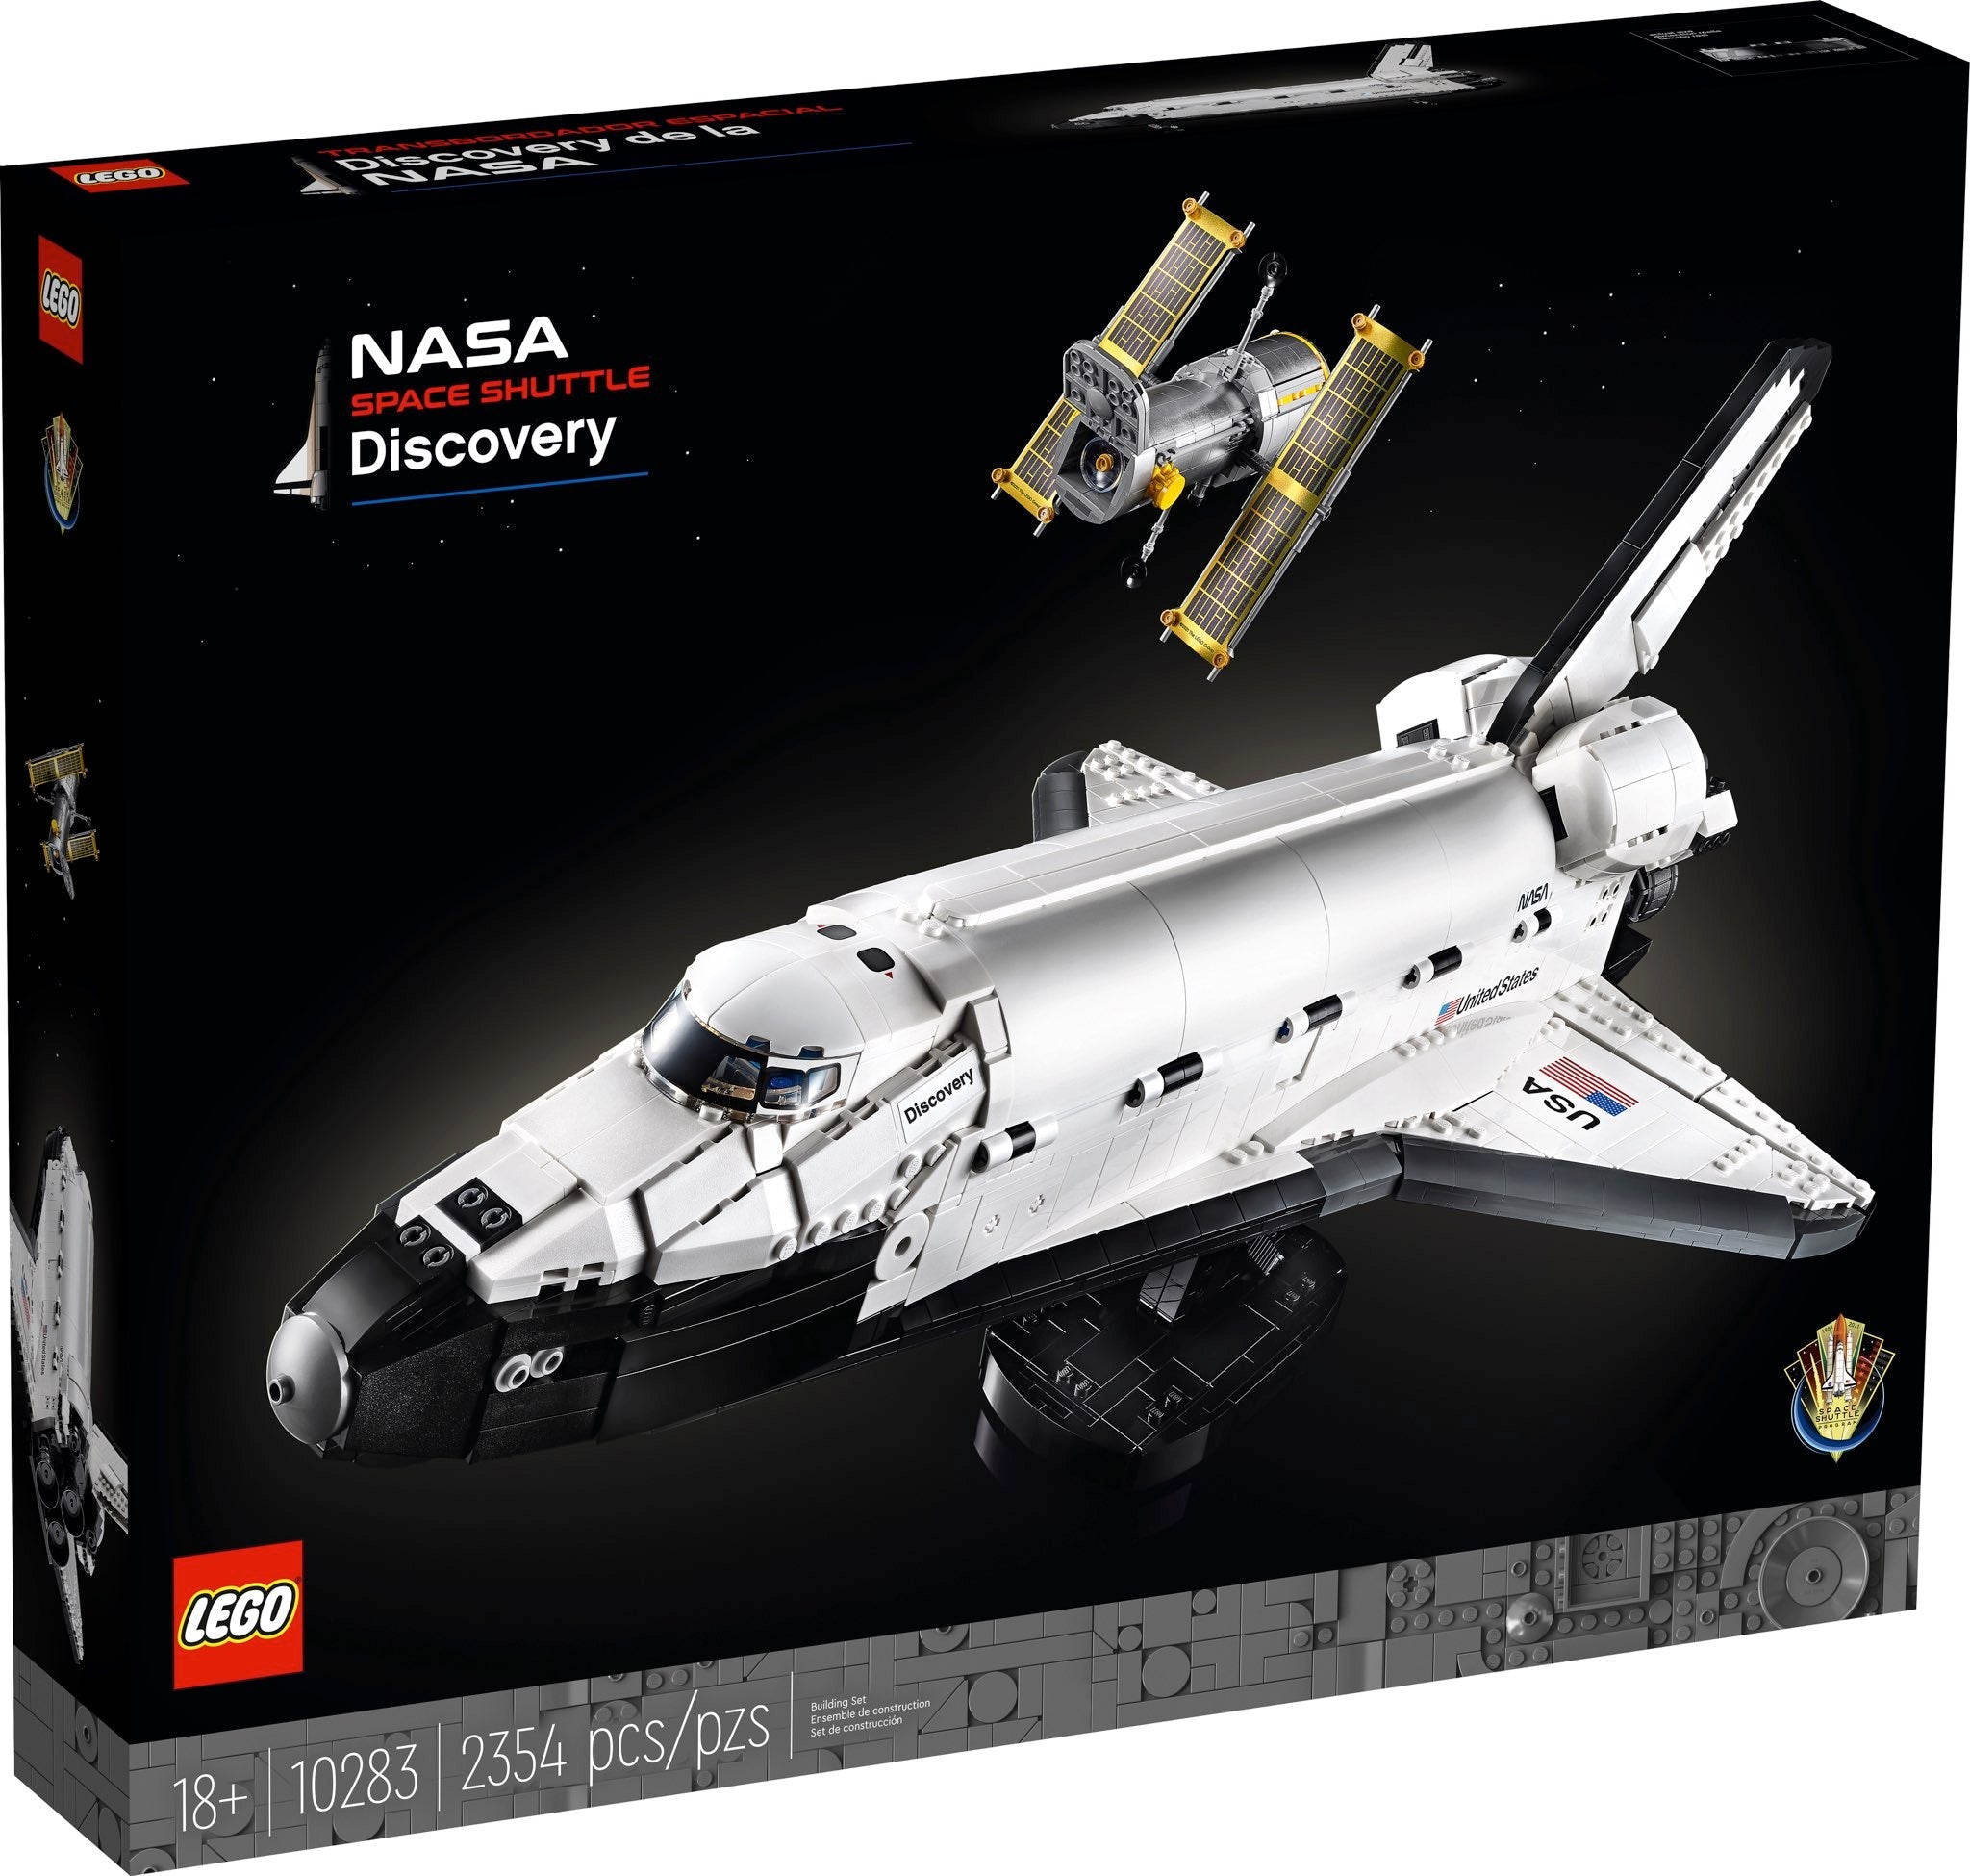 LEGO Creator Expert NASA-Spaceshuttle „Discovery“ (10283) - im GOLDSTIEN.SHOP verfügbar mit Gratisversand ab Schweizer Lager! (5702016914061)